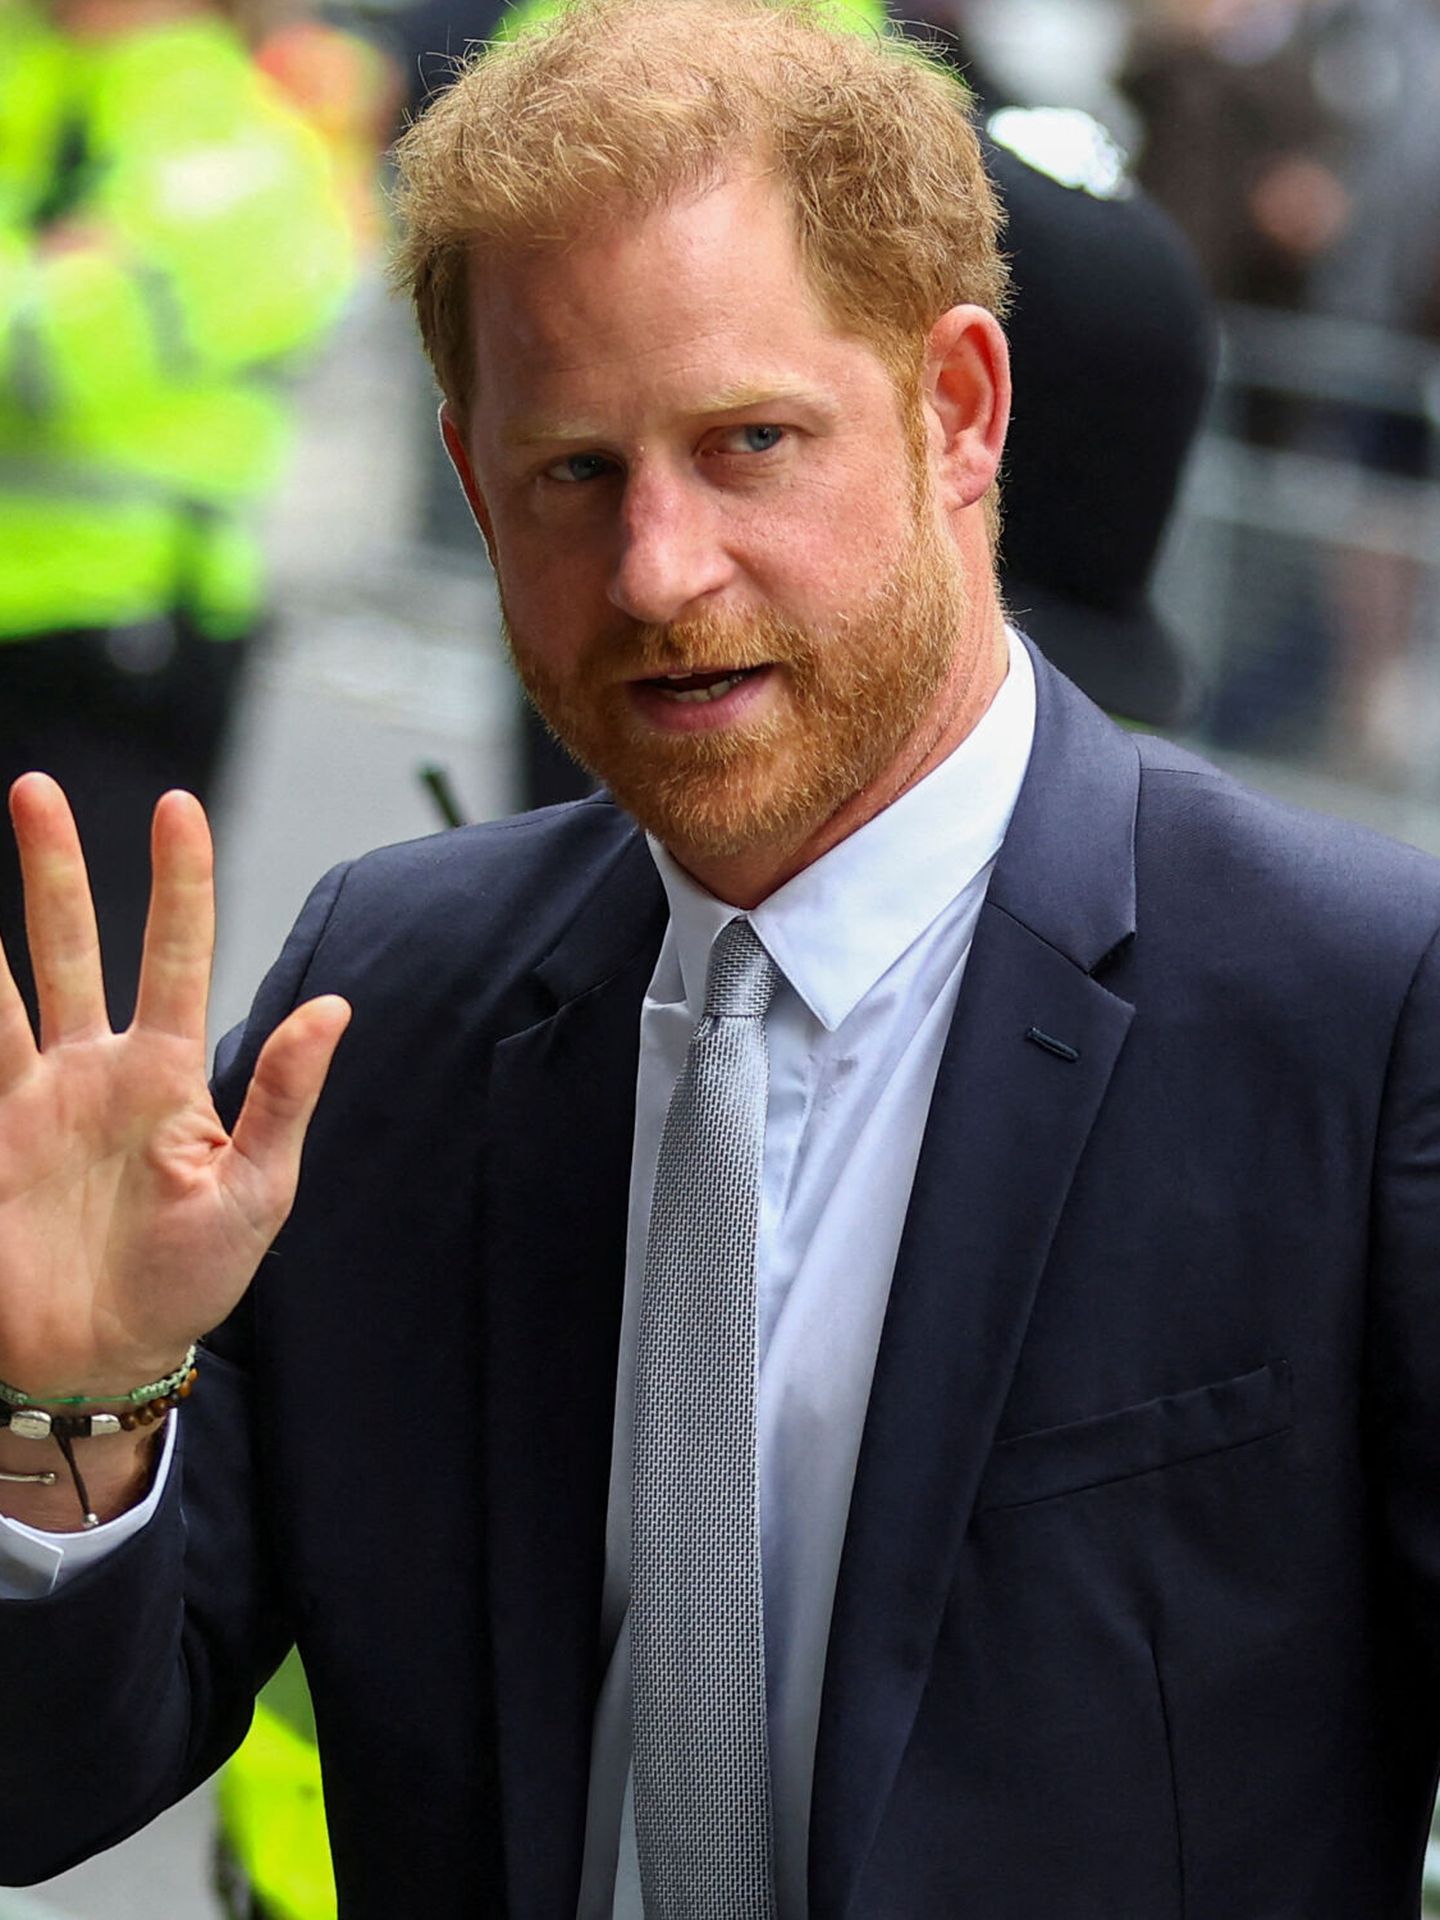 El príncipe Harry, durante una visita el pasado año a Londres. (Reuters/Hannah McKay)